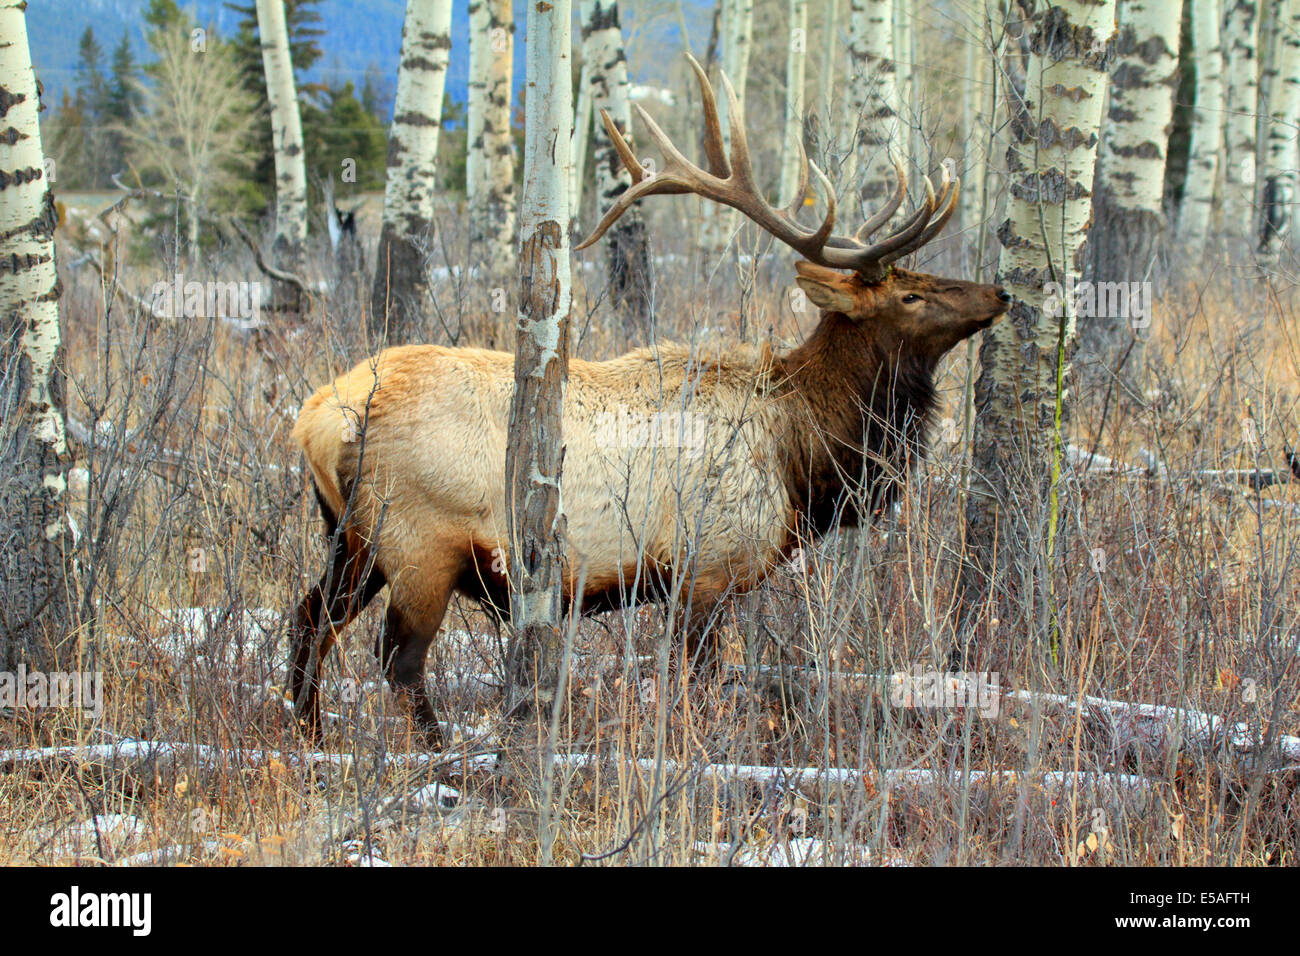 40,914.04463 Bull elk con enormi corna di cervo in Aspen forest, mostrando tronchi d albero' in bianco e nero di corteccia Foto Stock